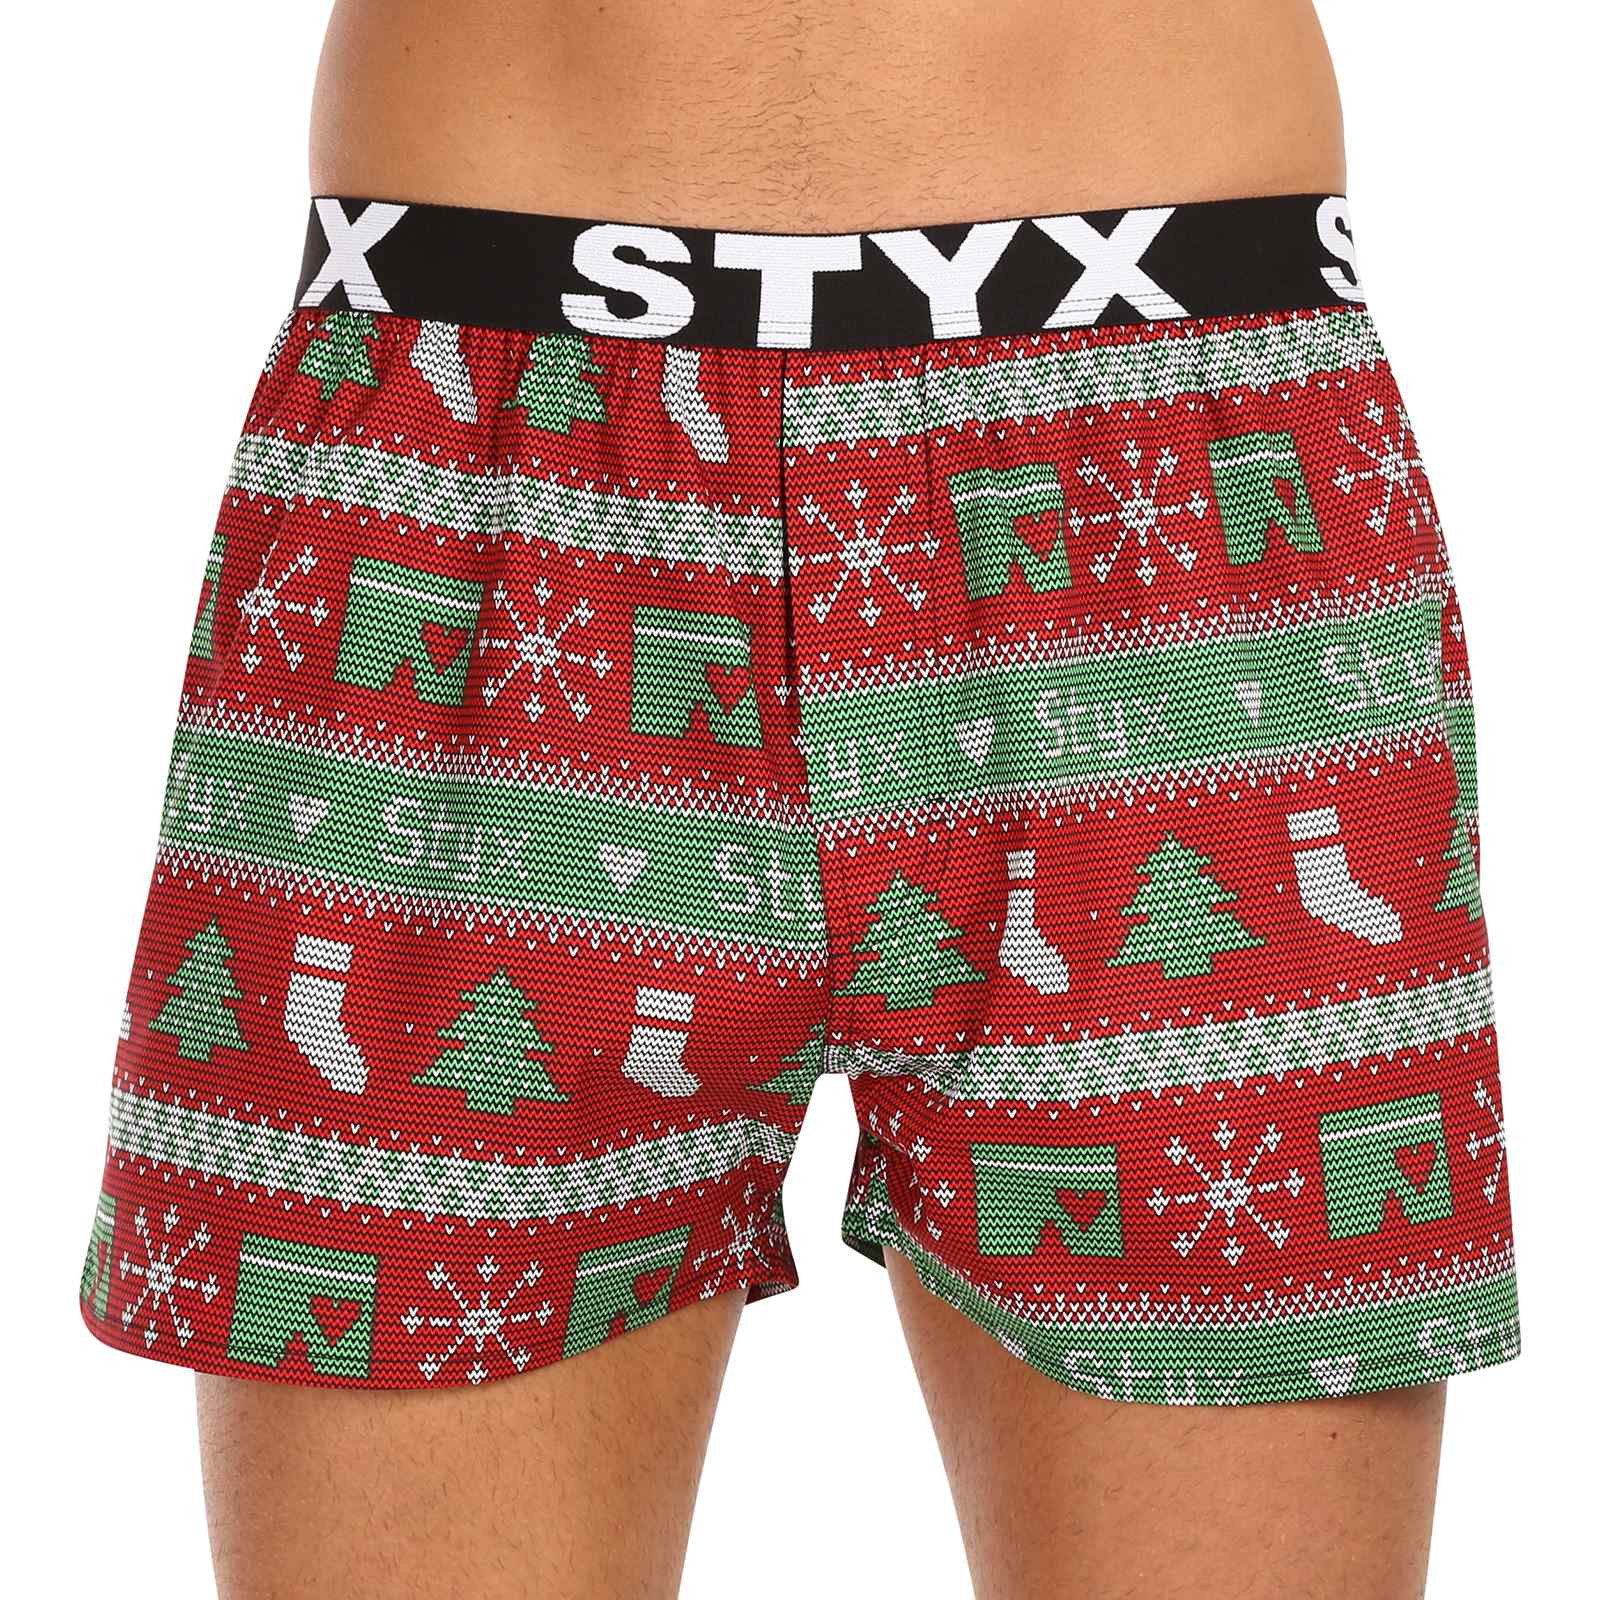 E-shop Pánské trenky Styx art sportovní guma Vánoce pletené